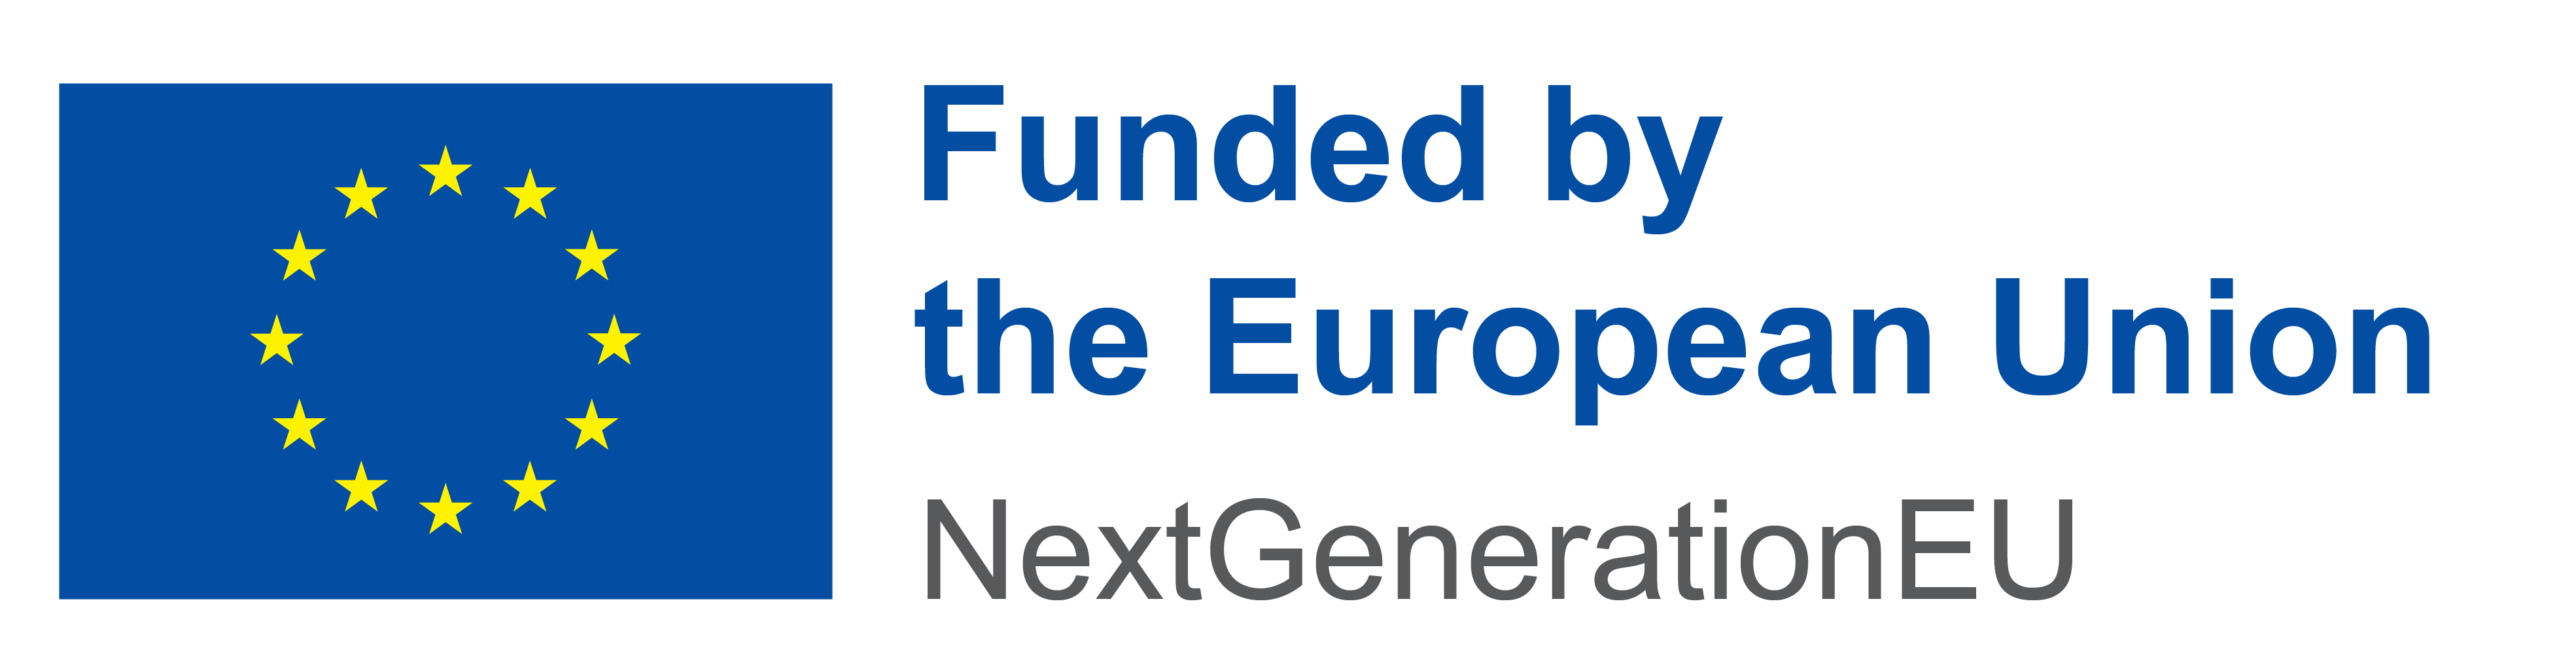 Funded by the European Union. NextGenerationEU.